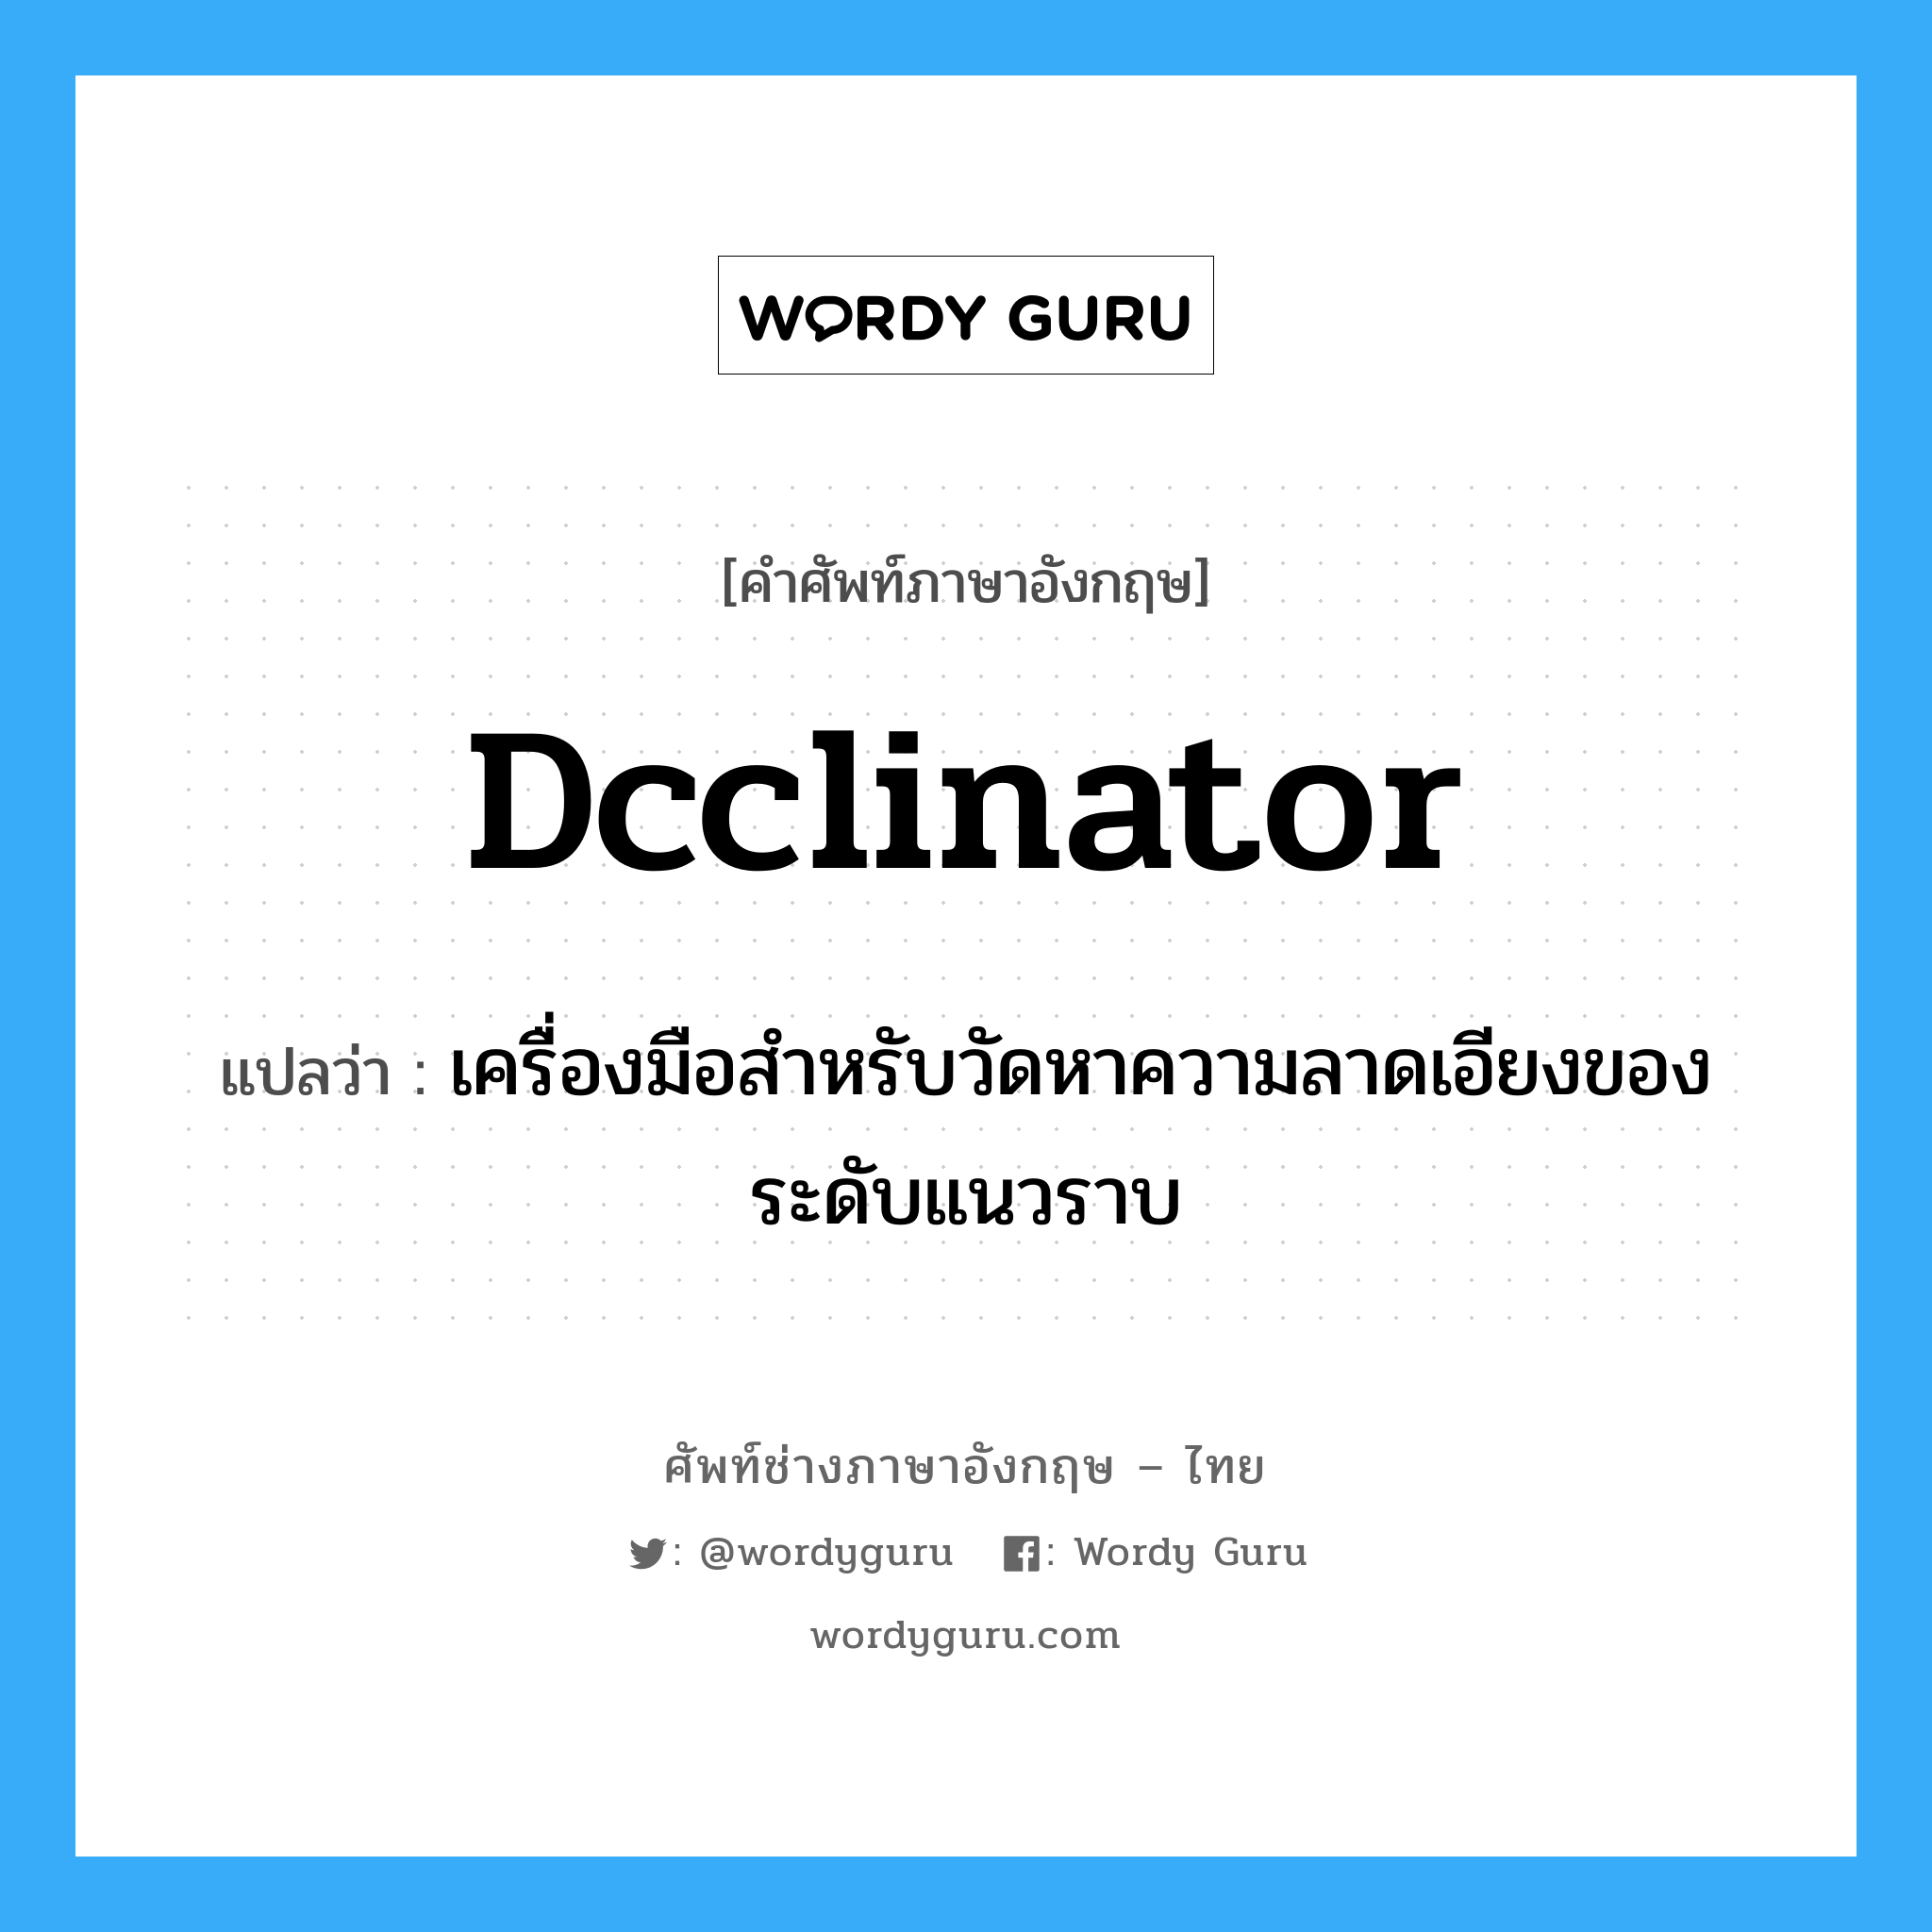 dcclinator แปลว่า?, คำศัพท์ช่างภาษาอังกฤษ - ไทย dcclinator คำศัพท์ภาษาอังกฤษ dcclinator แปลว่า เครื่องมือสำหรับวัดหาความลาดเอียงของระดับแนวราบ